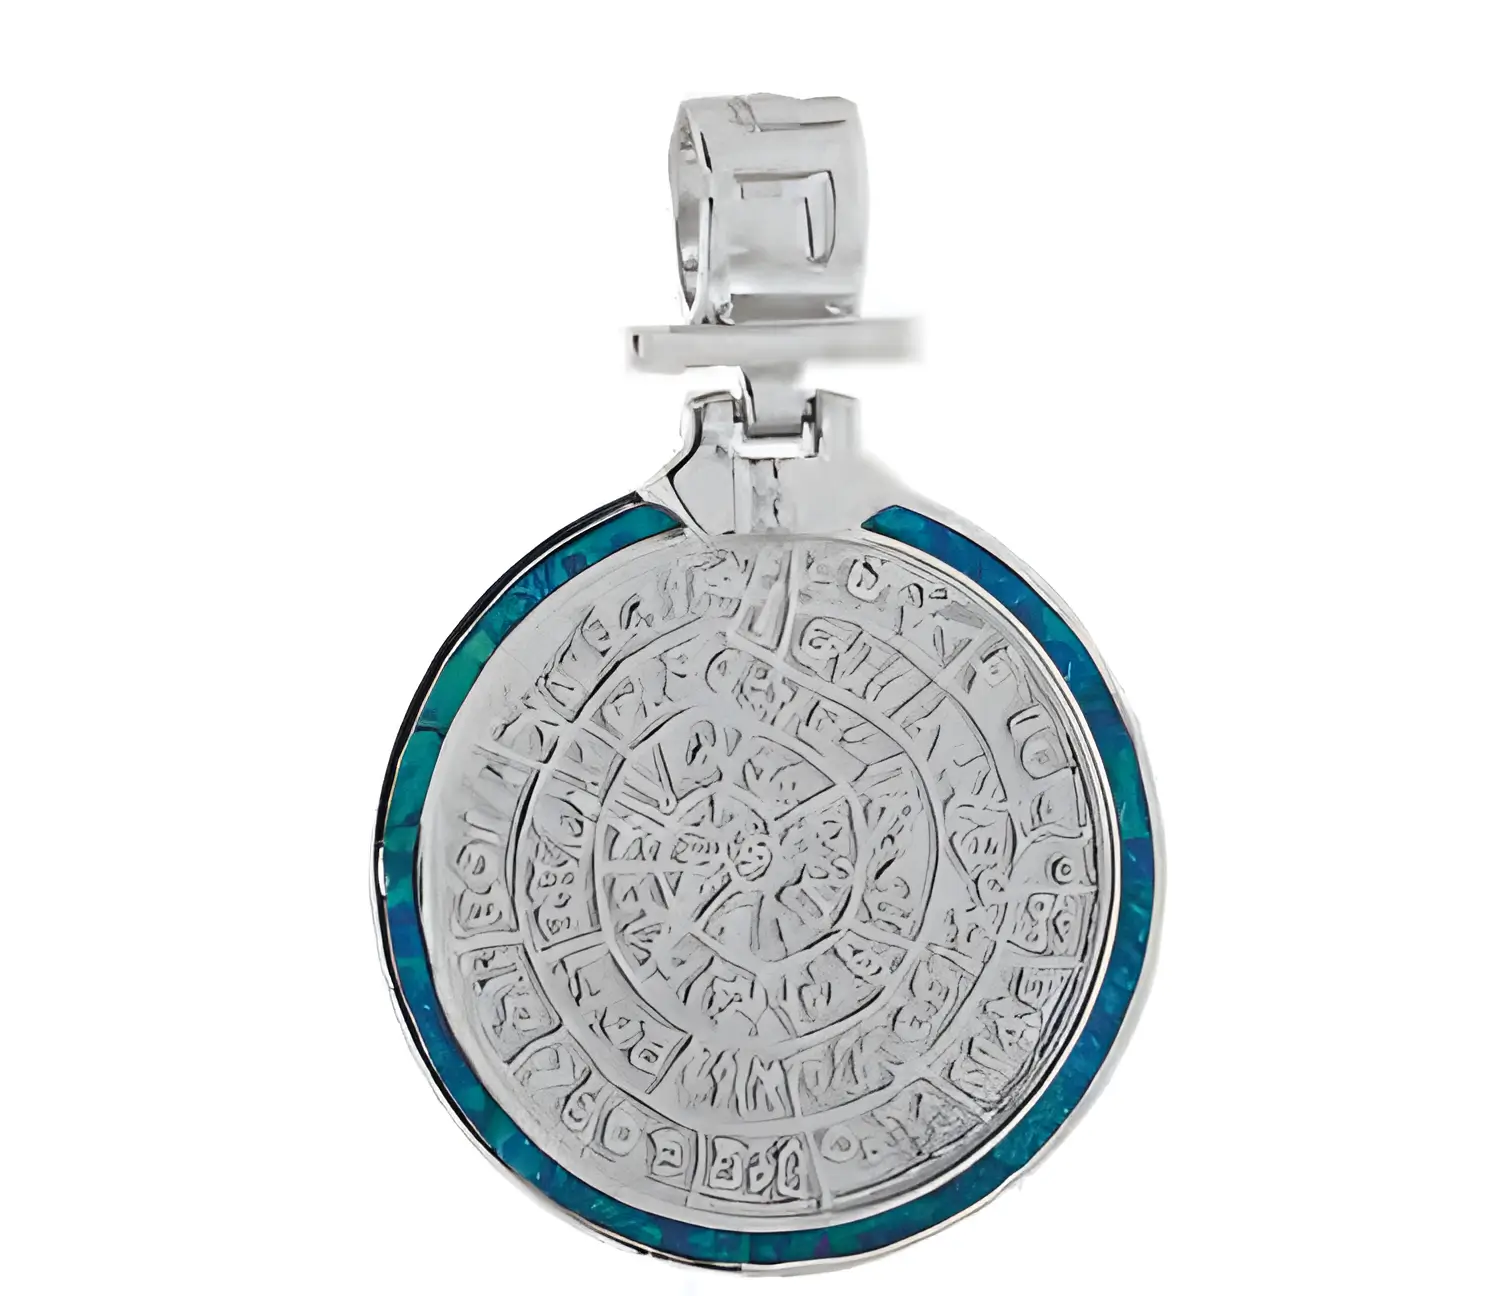 сребърен медальон със зелен опал и диск фестос